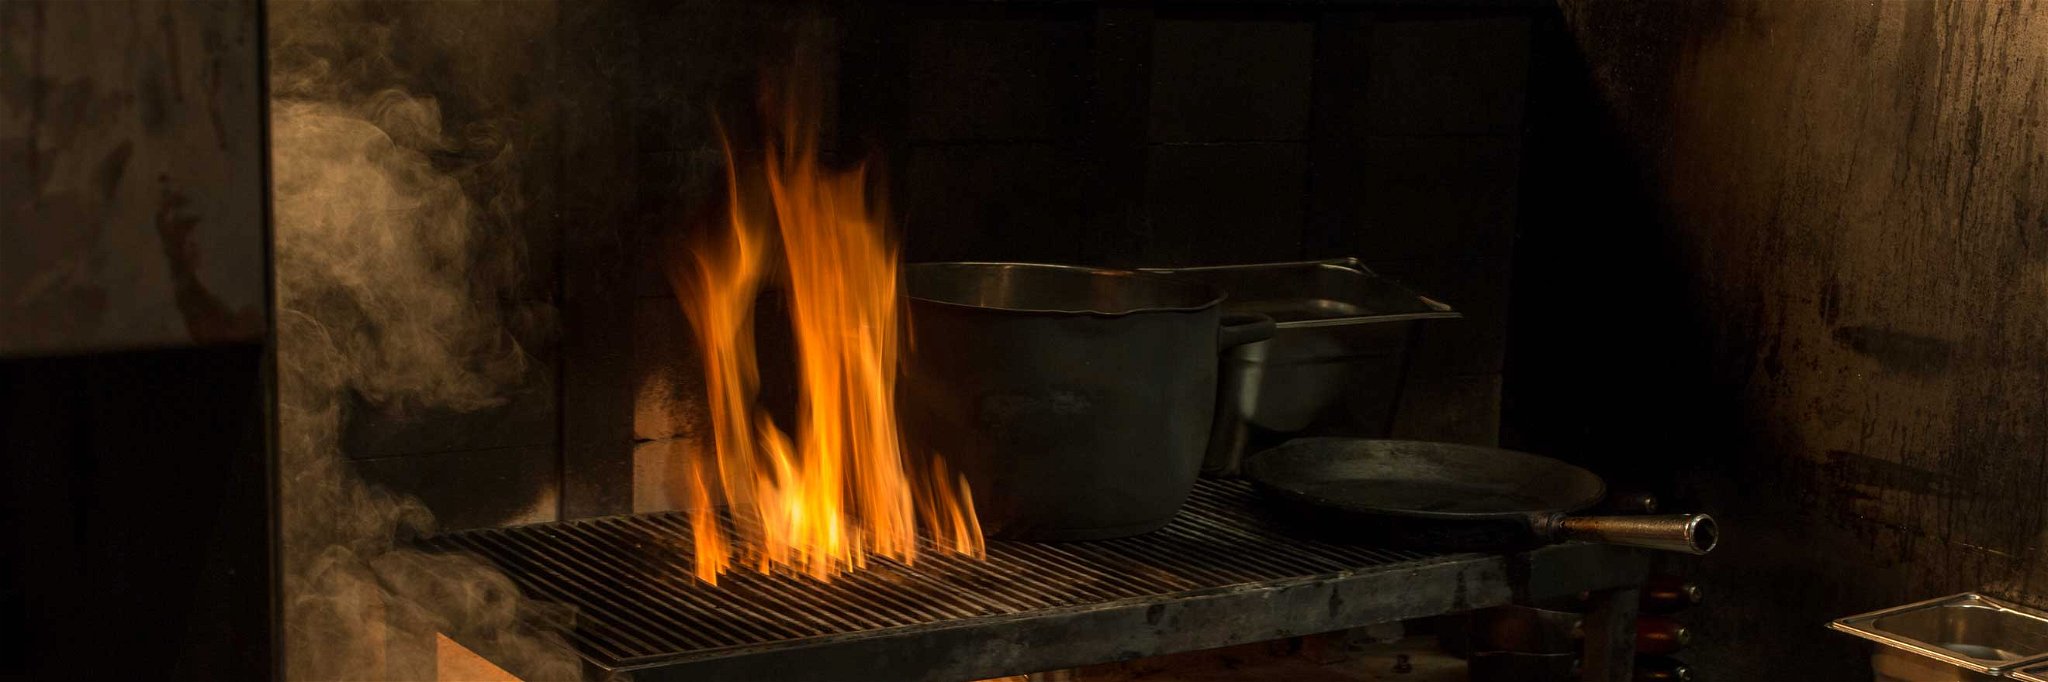 Kochen am offenen Feuer ist eine neue Herausforderung.